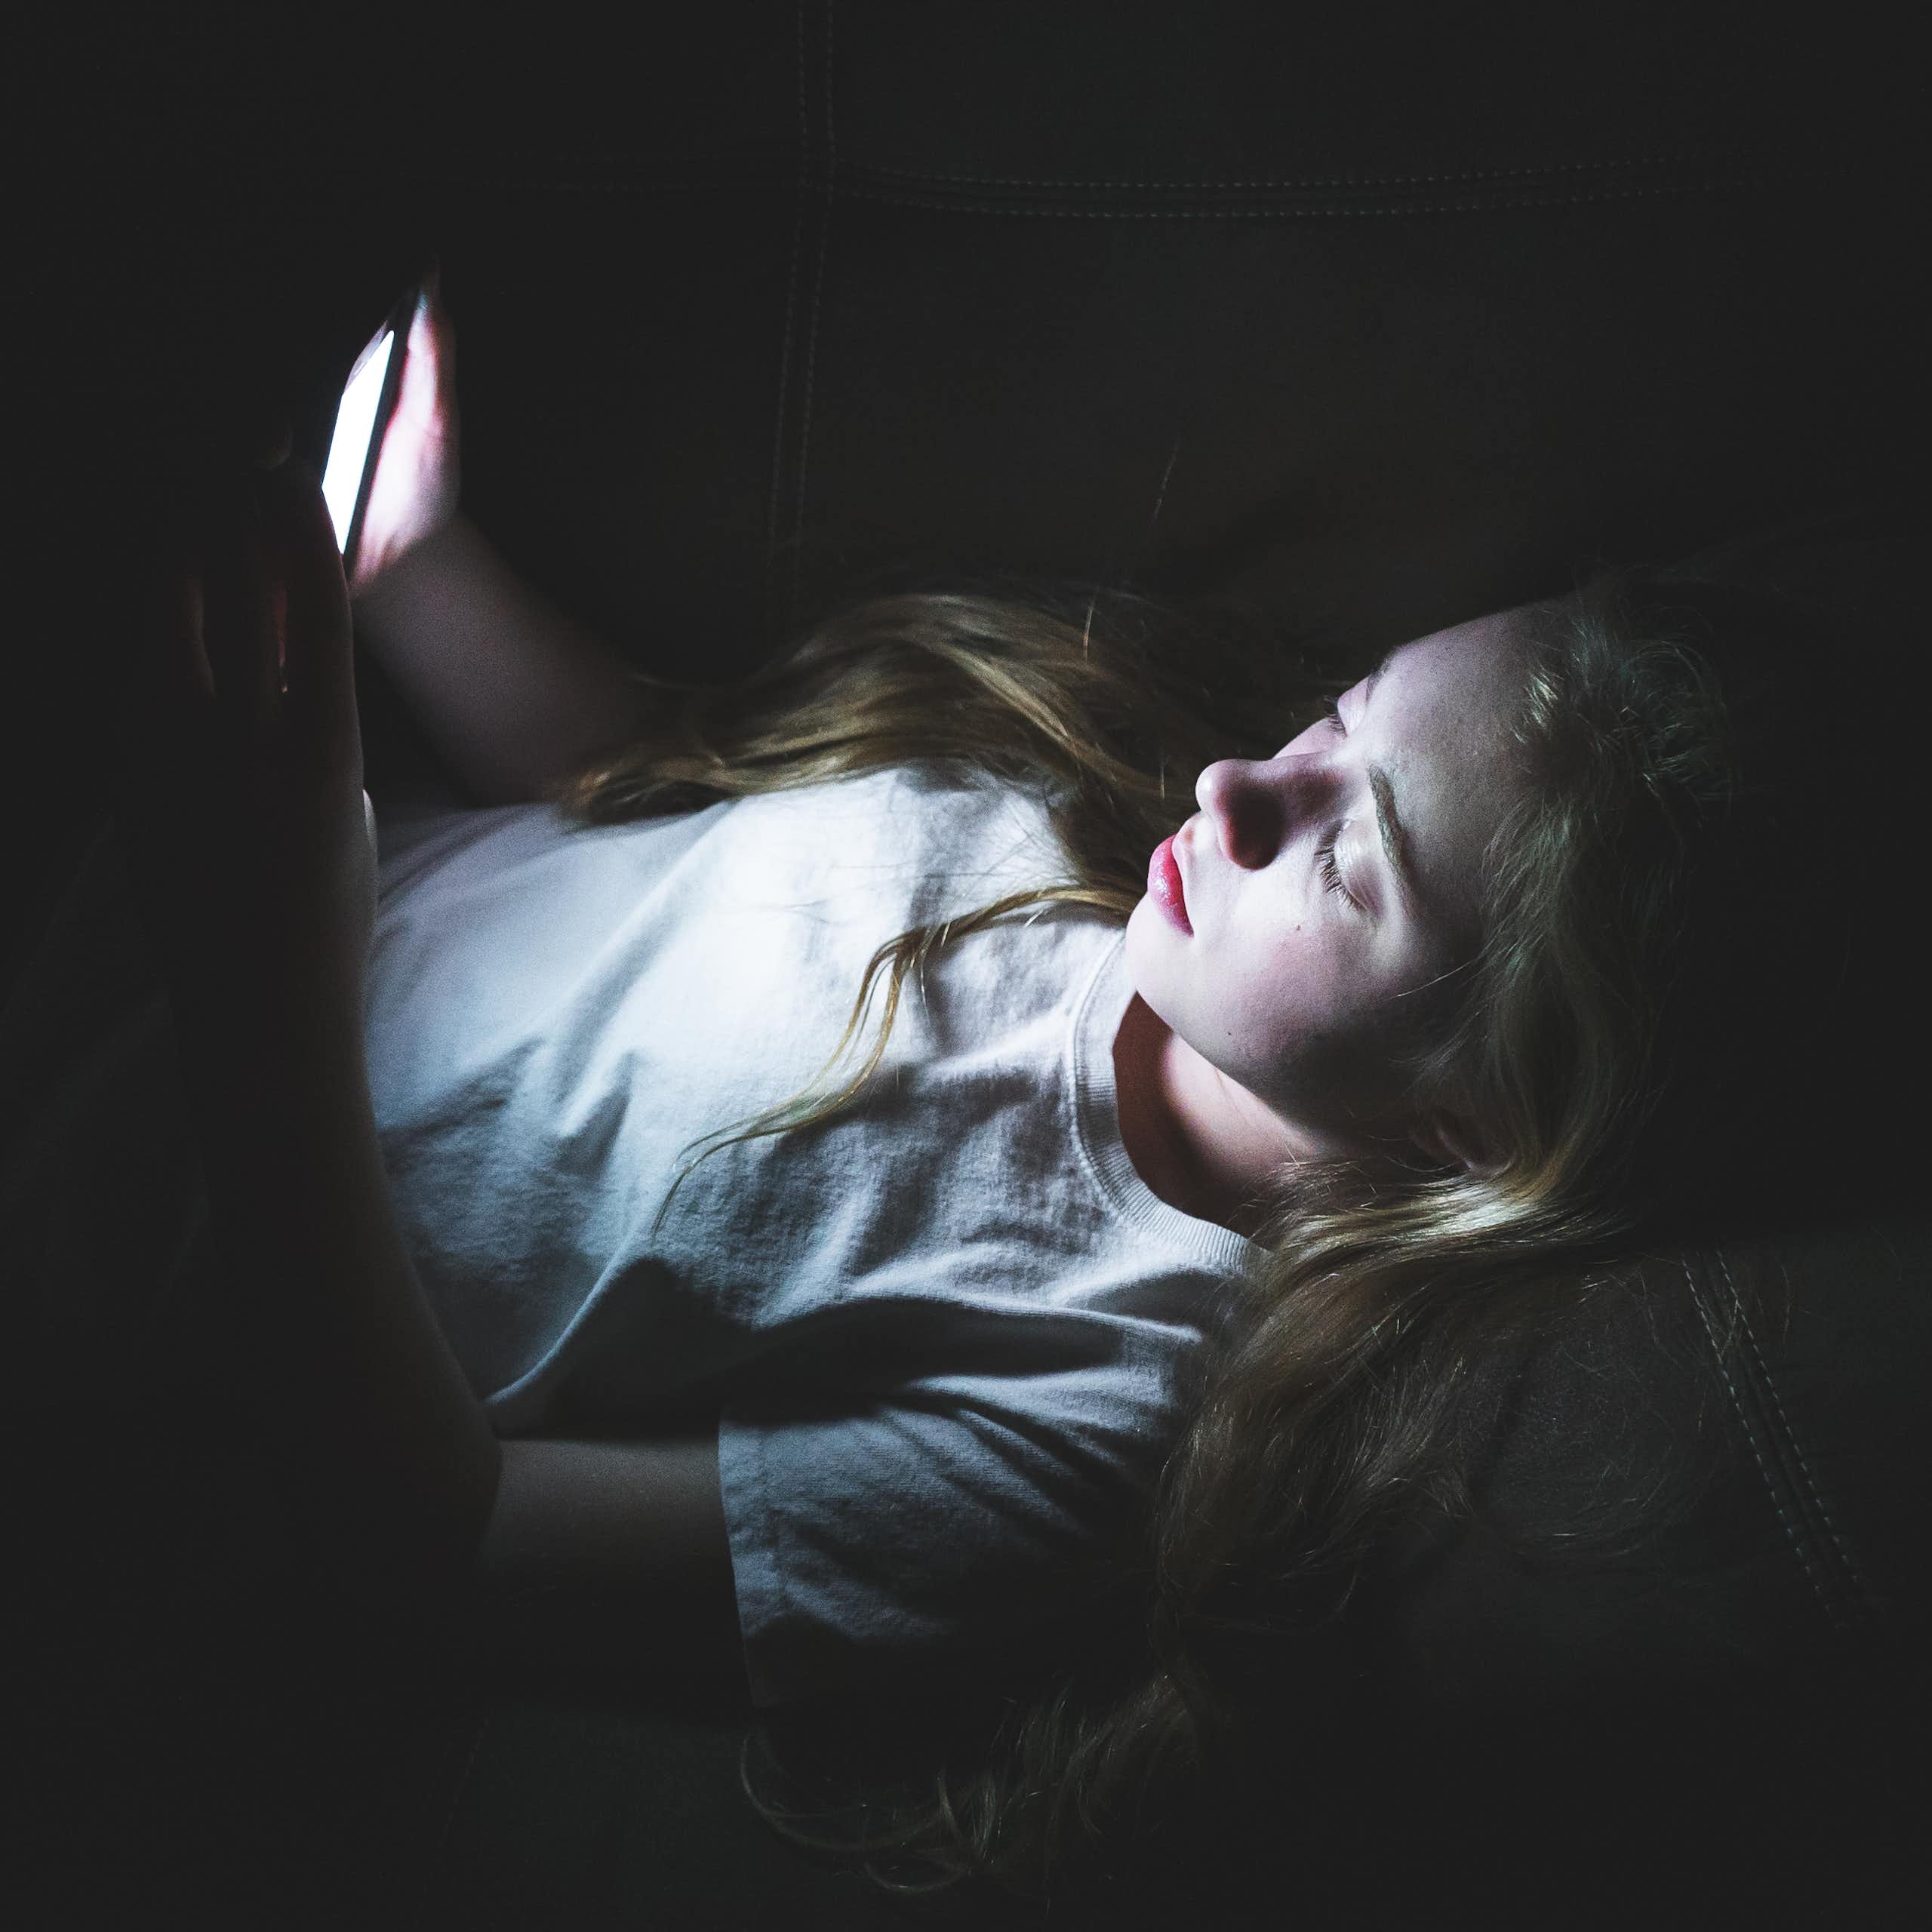 Una adolescente observa la pantalla de su móvil en una habitación a oscuras.